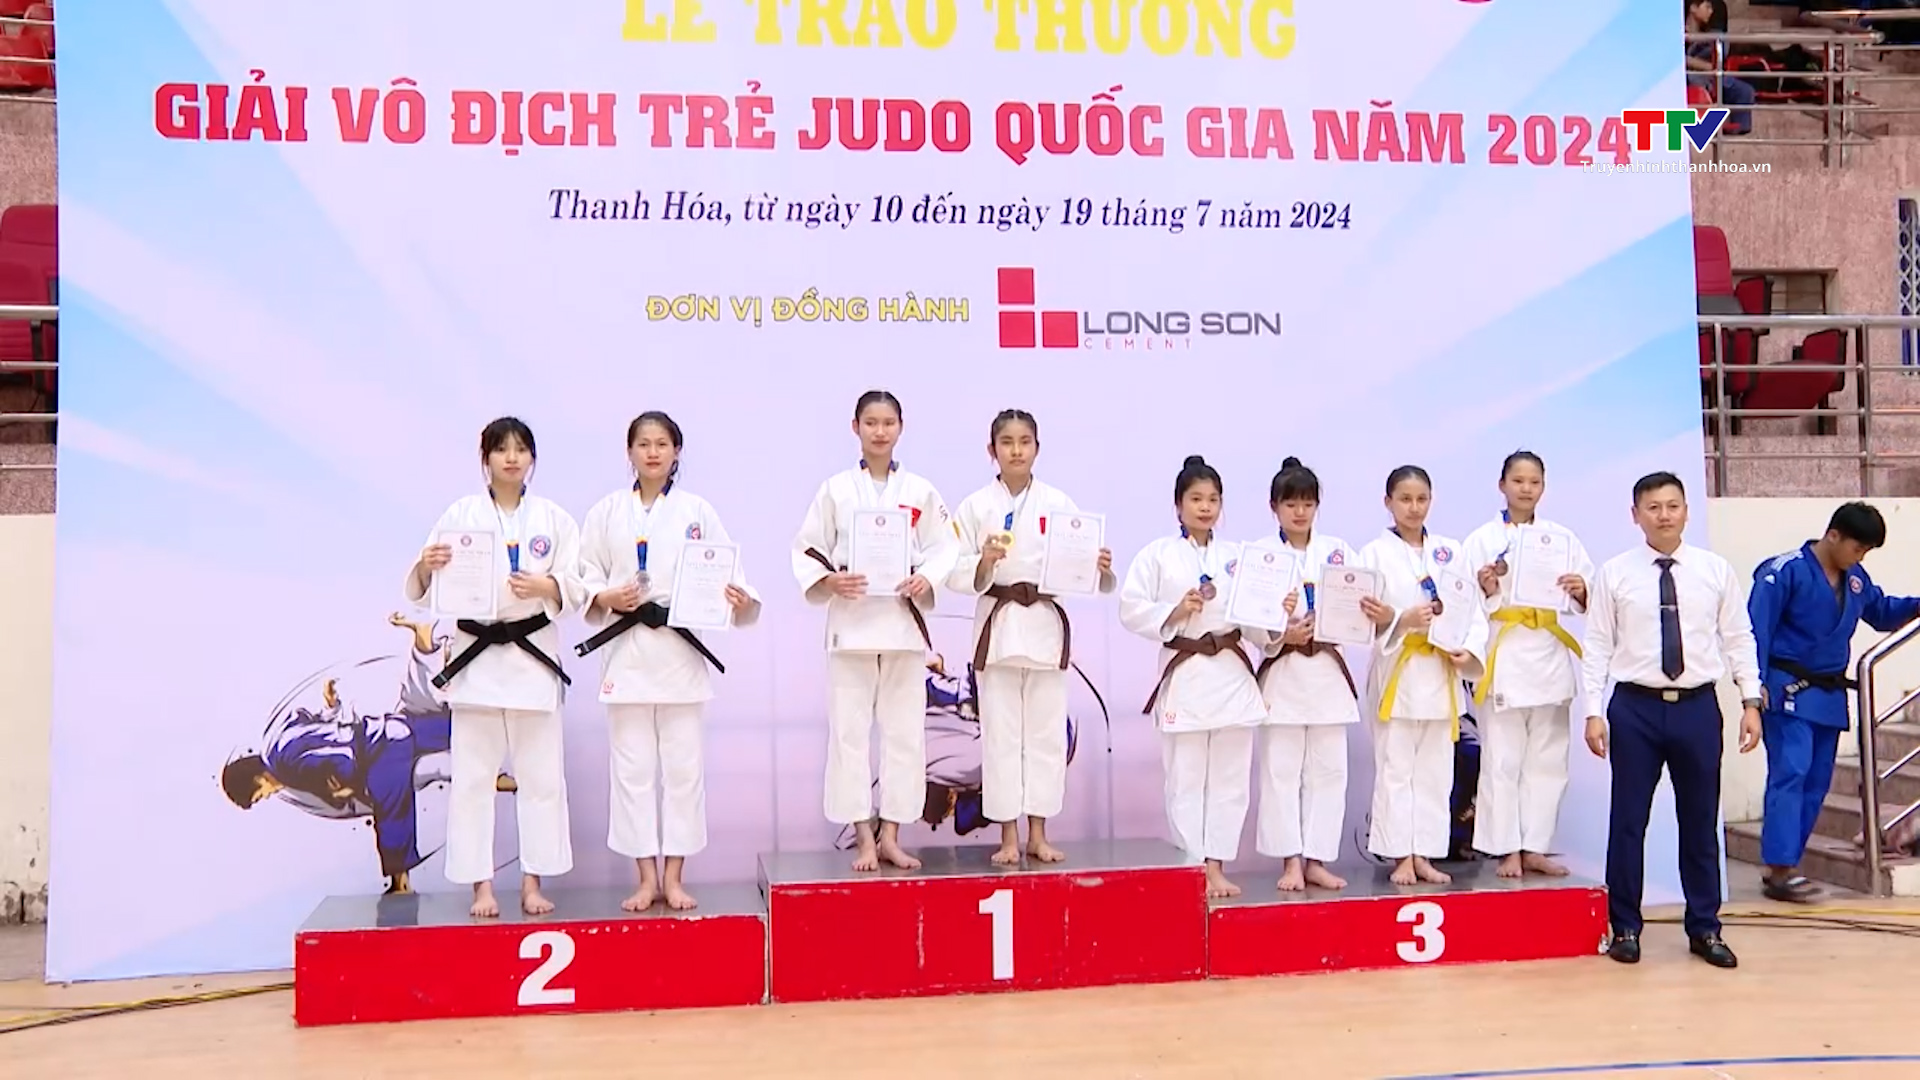 Khai mạc Giải vô địch trẻ Judo Quốc gia - Ảnh 1.